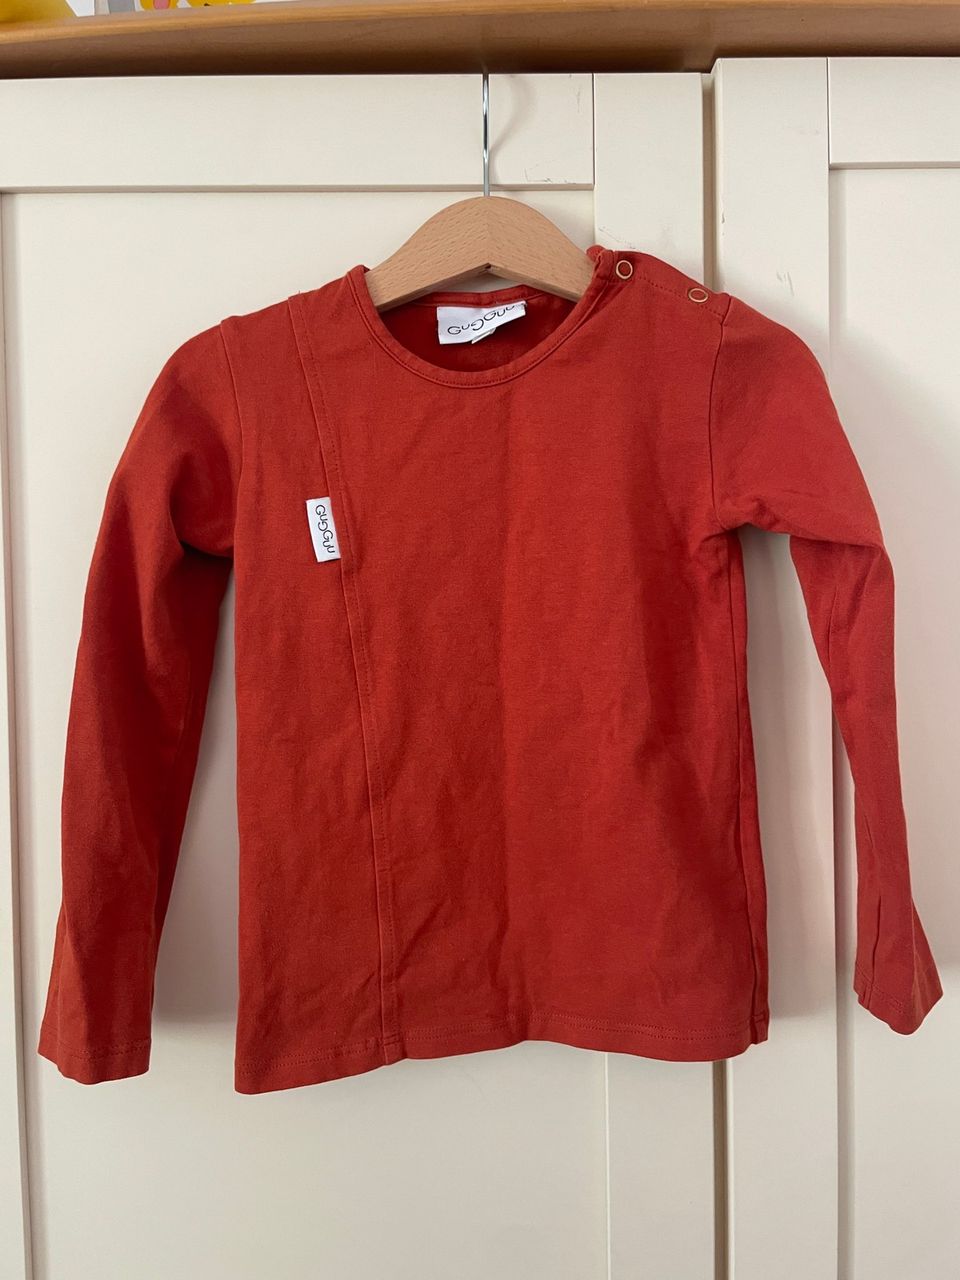 Gugguu punainen paita (kokoa 98) ja pöksyt